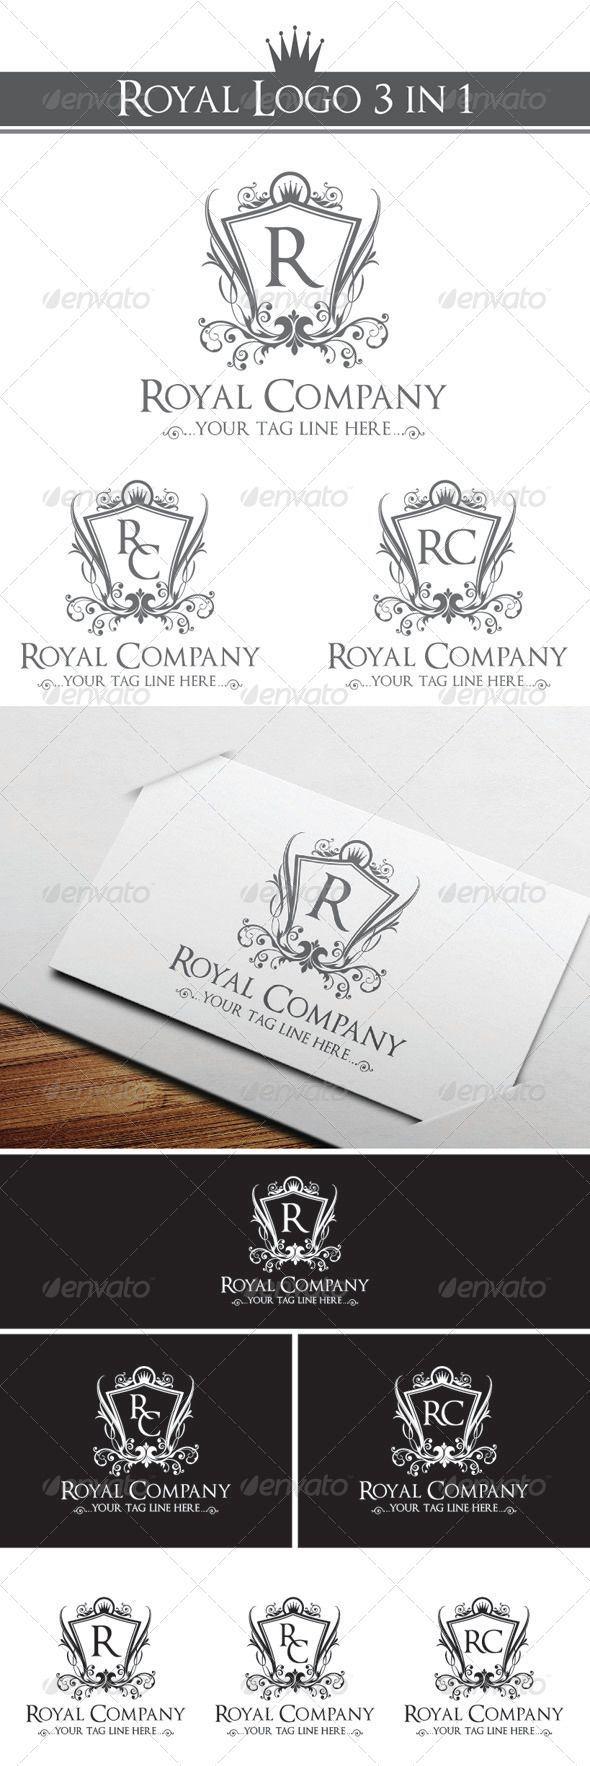 Royal Company Logo - Royal Company Logo Template #GraphicRiver Royal Company logo 3 in 1 ...